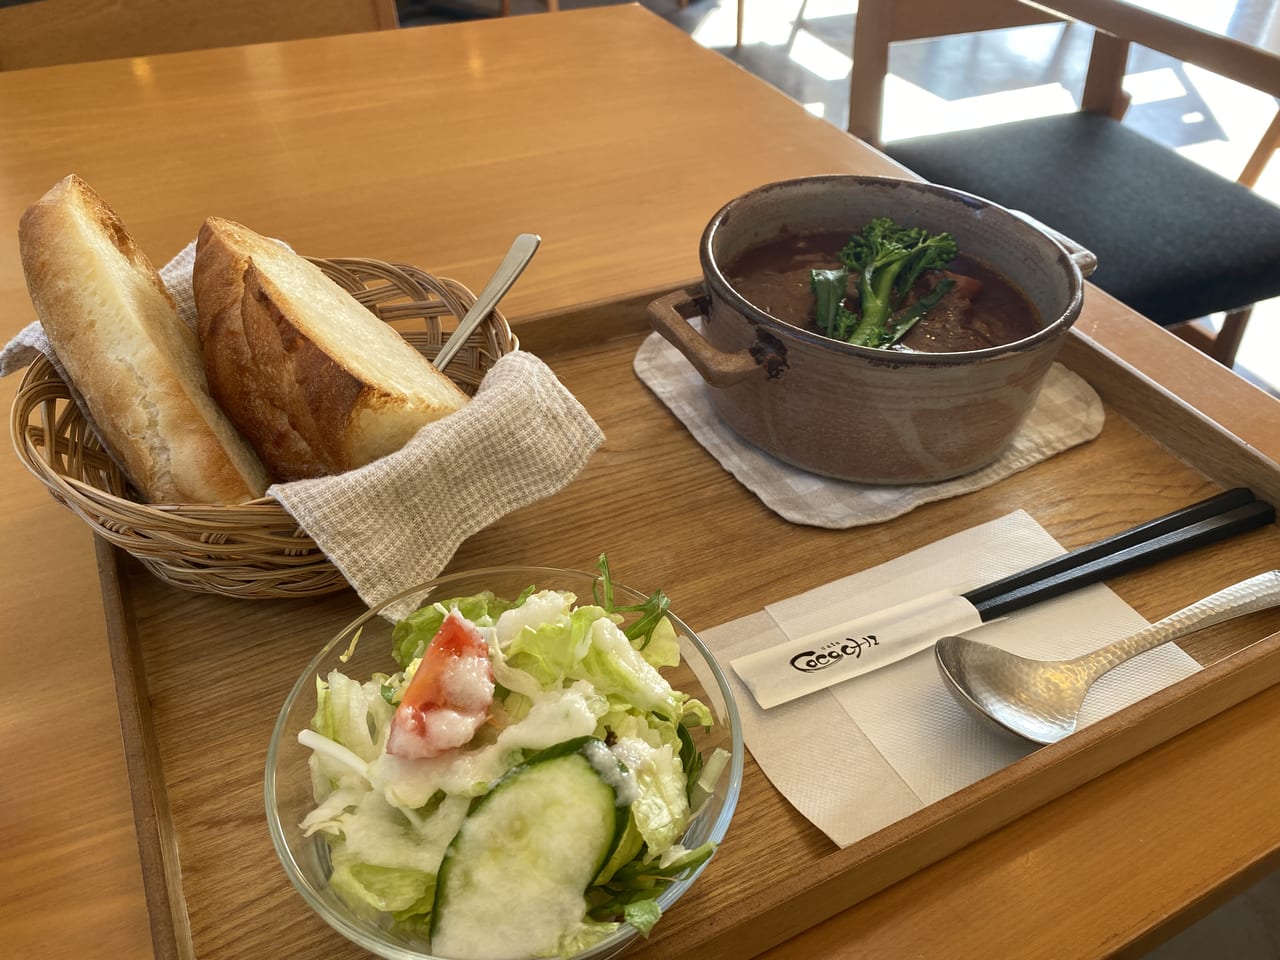 神戸市西区 住宅街にある隠れ家カフェ Cafe Cocochi 限定5食のビーフシチューランチが絶品でした 号外net 神戸市西区